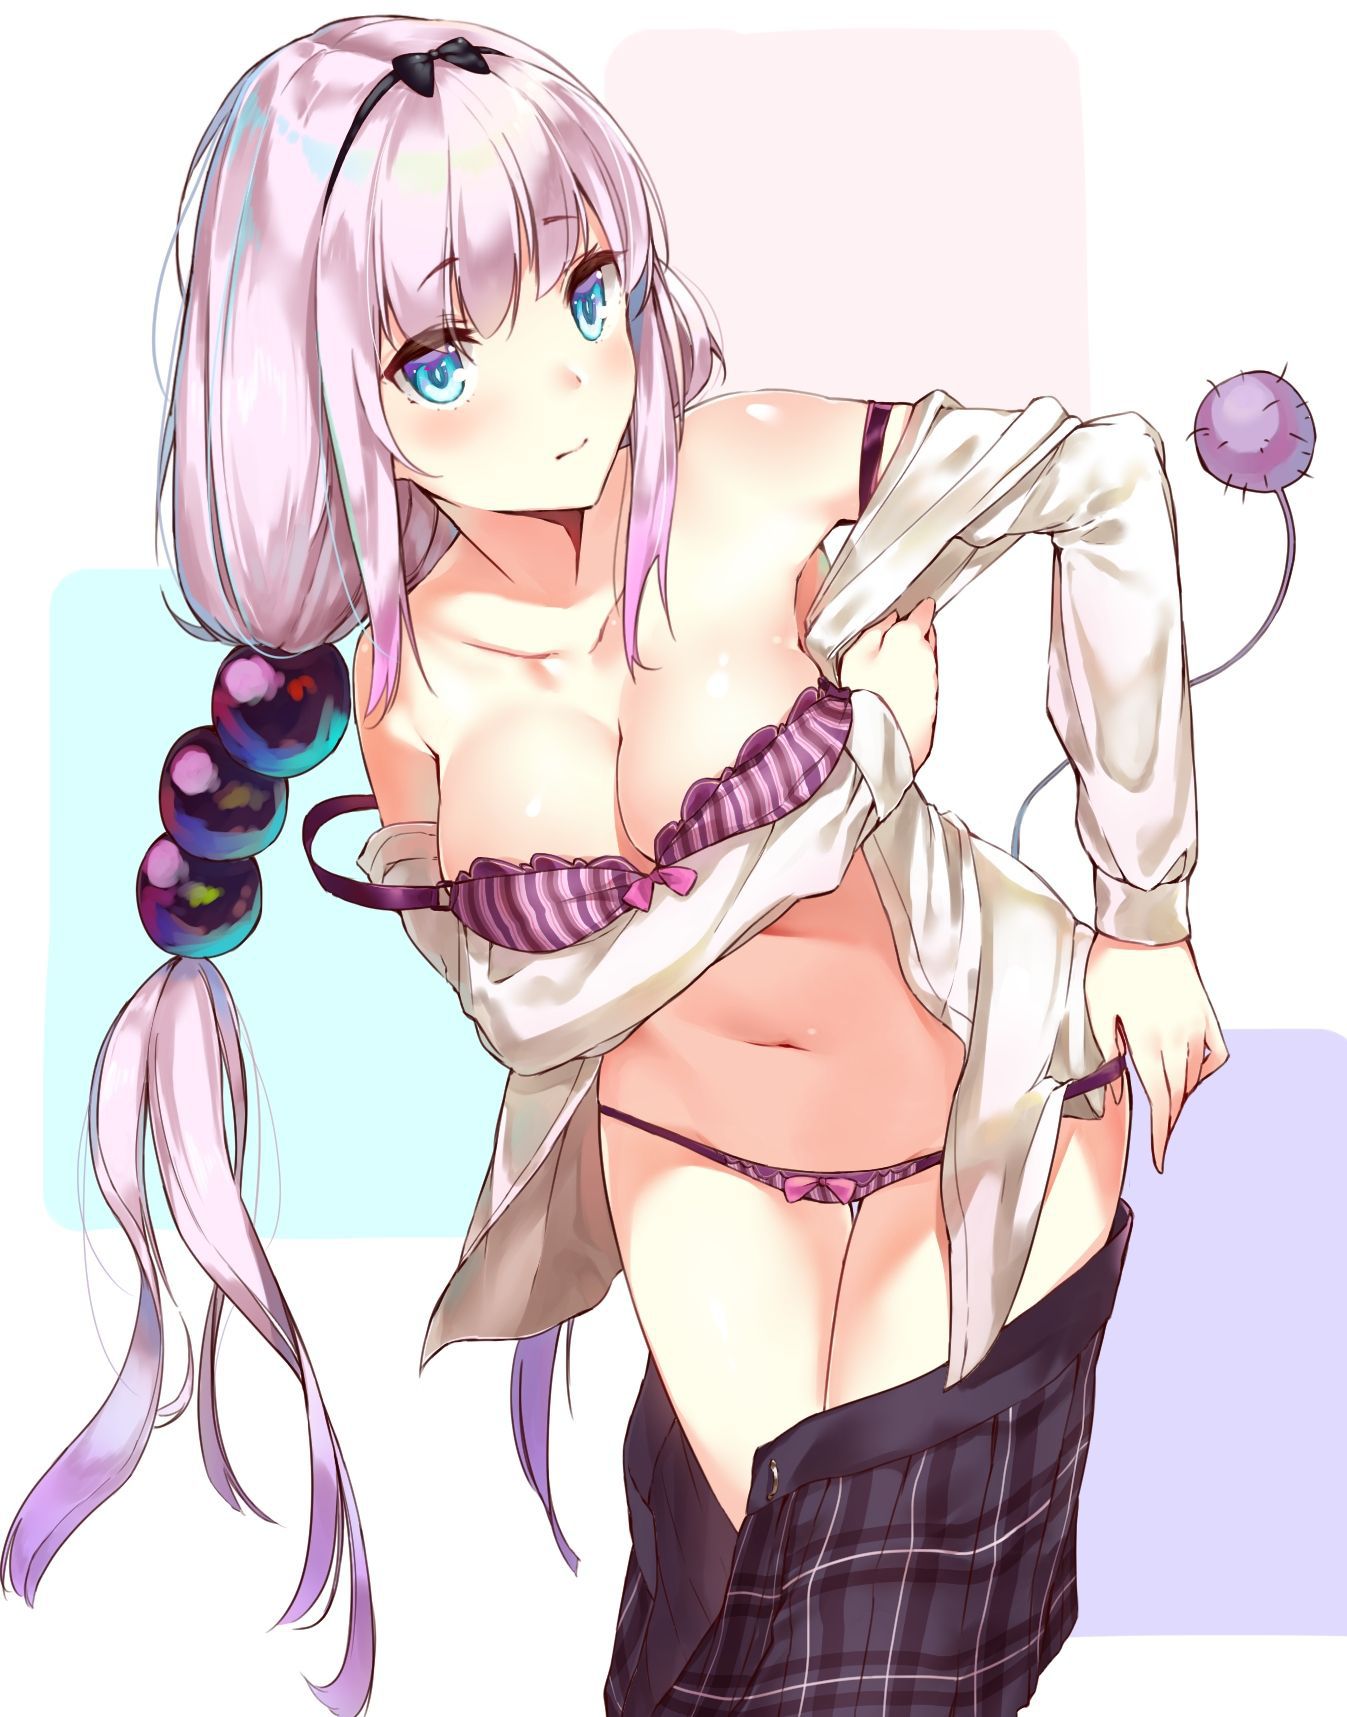 [Secondary, ZIP] Multipl purple underwear girl pictures 15